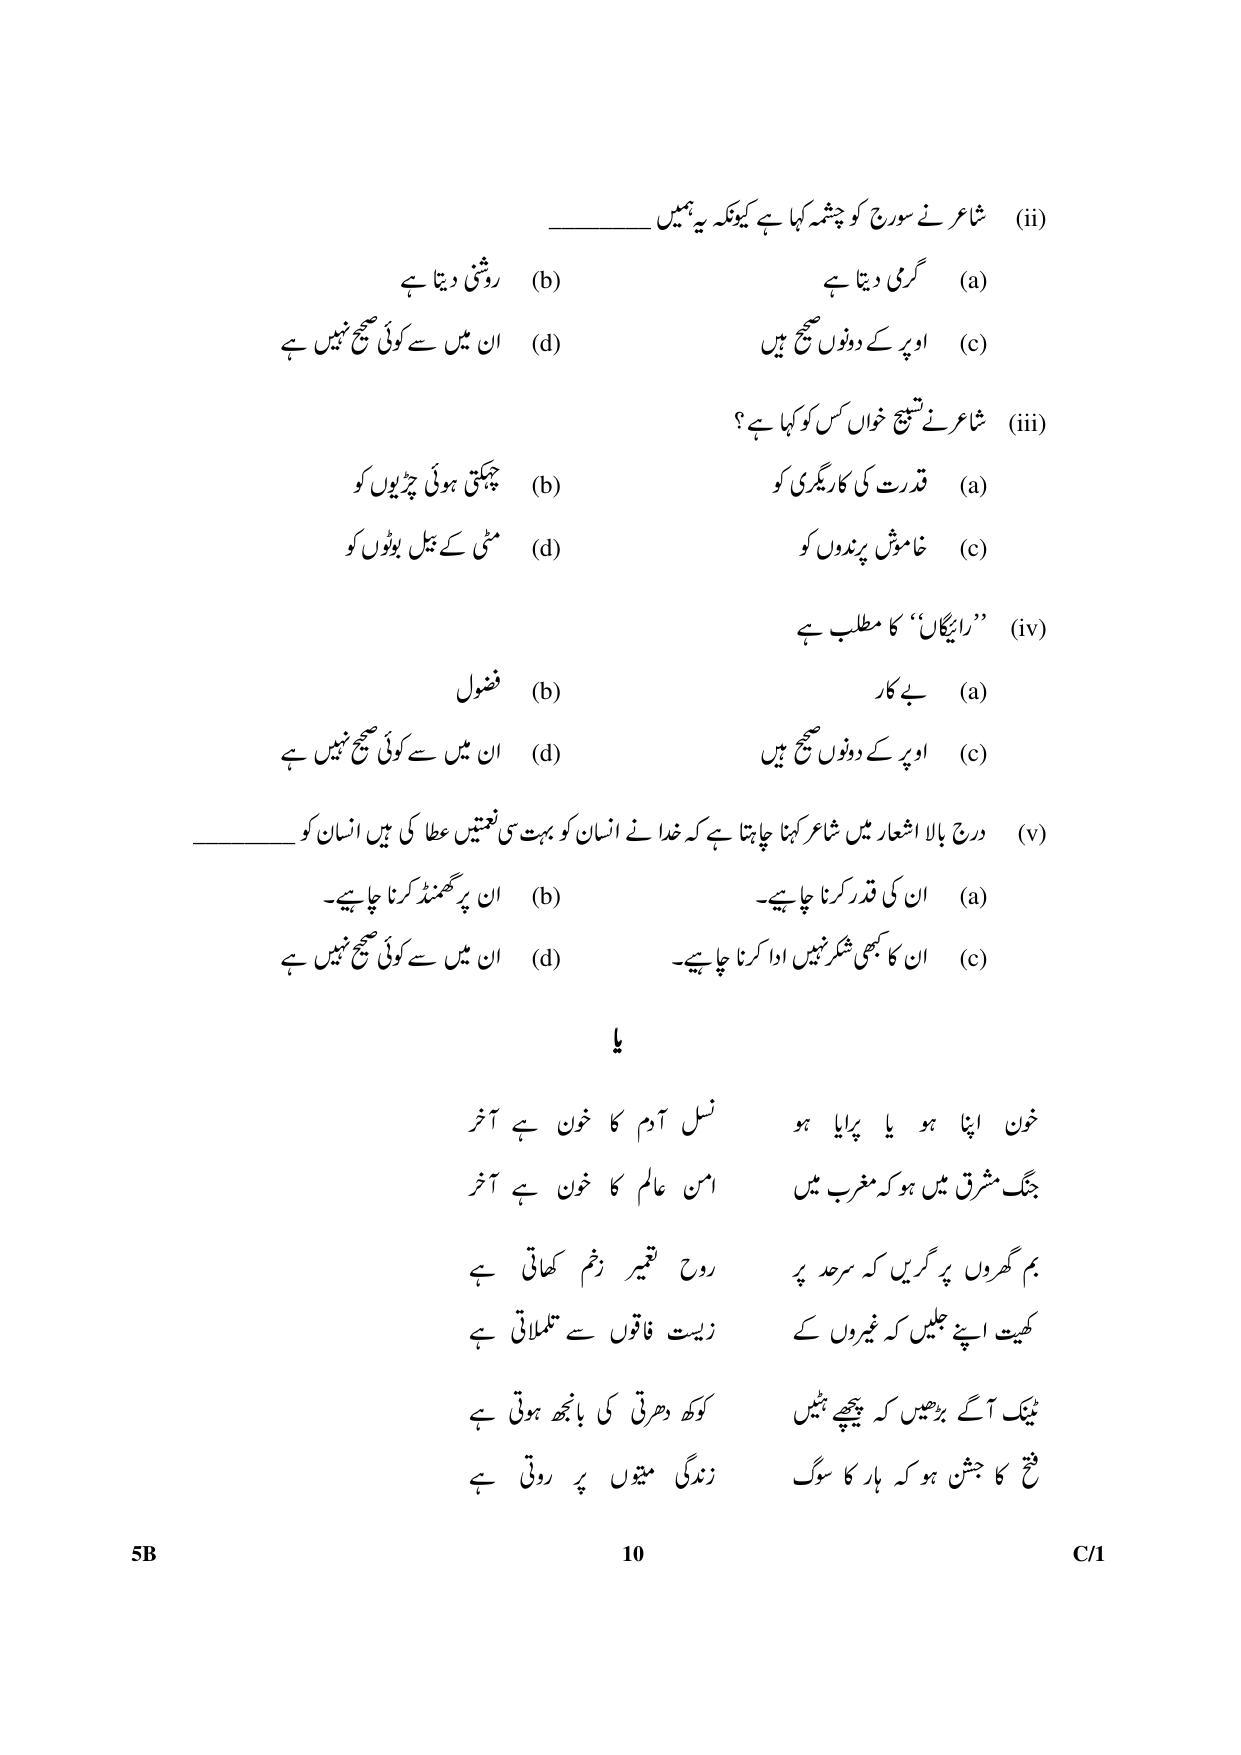 CBSE Class 10 5B Urdu (Course B) 2018 Compartment Question Paper - Page 10